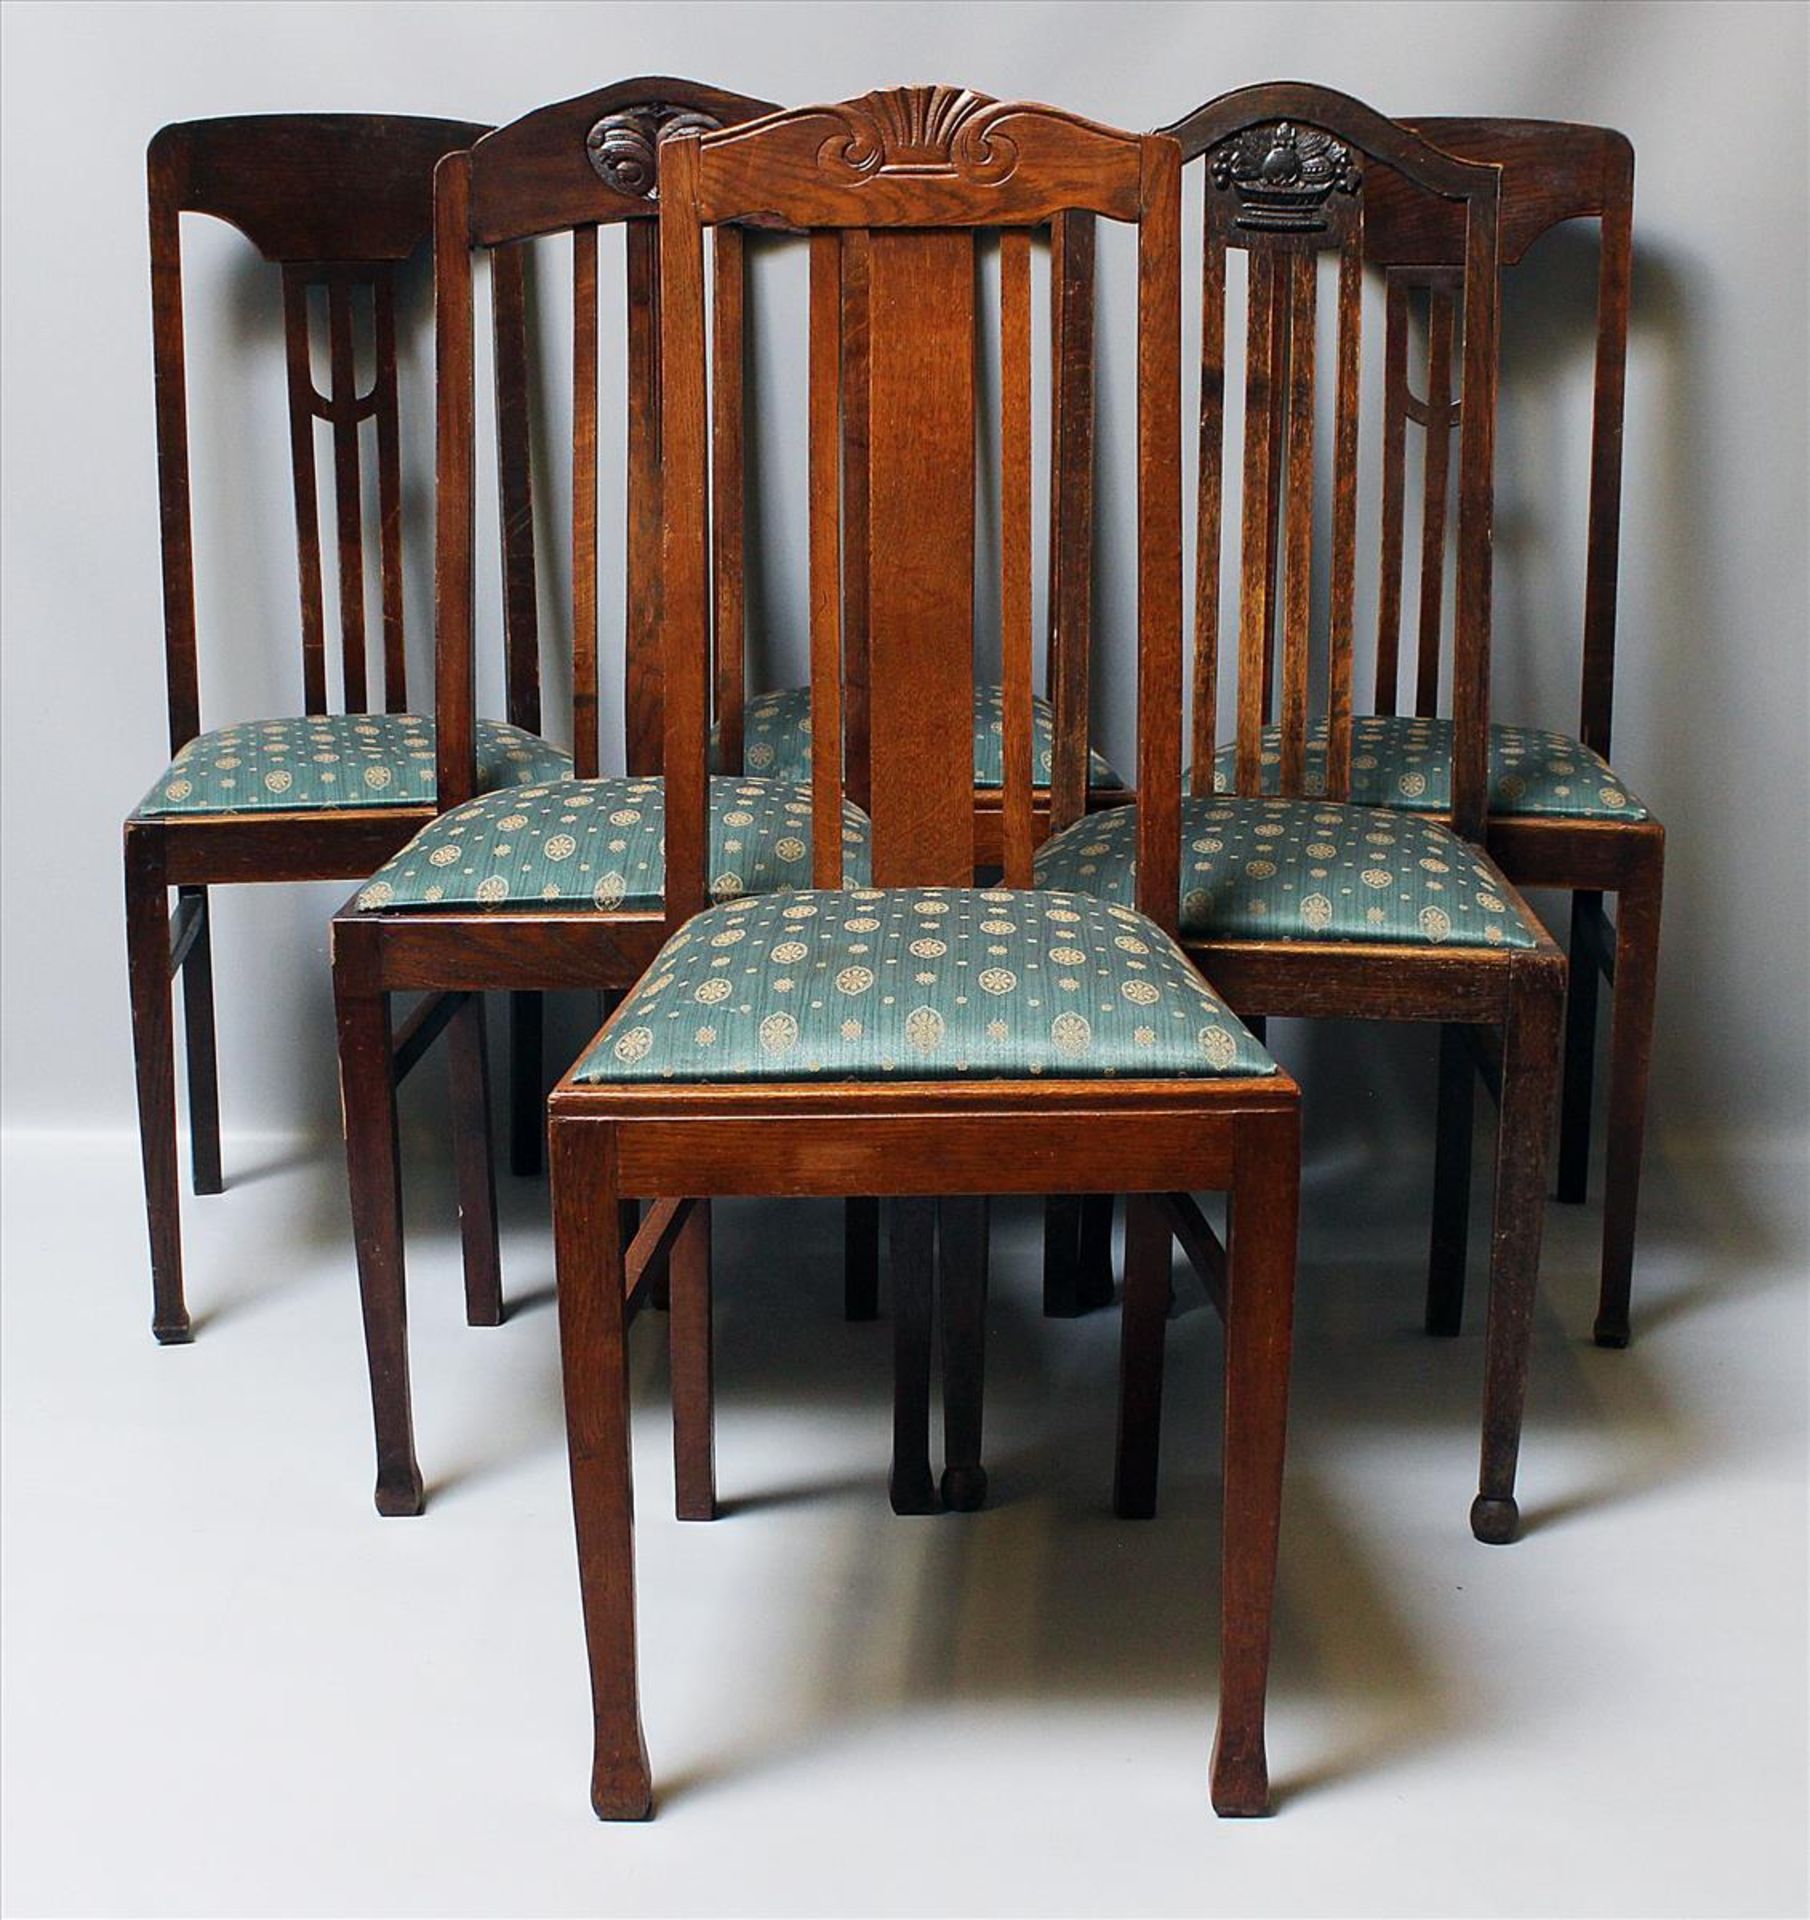 6 Stühle.Eiche. Pfostenbeine, Rückenlehnen teils mit geschnitzten Elementen. Sitz gepolstert. Um - Bild 2 aus 2